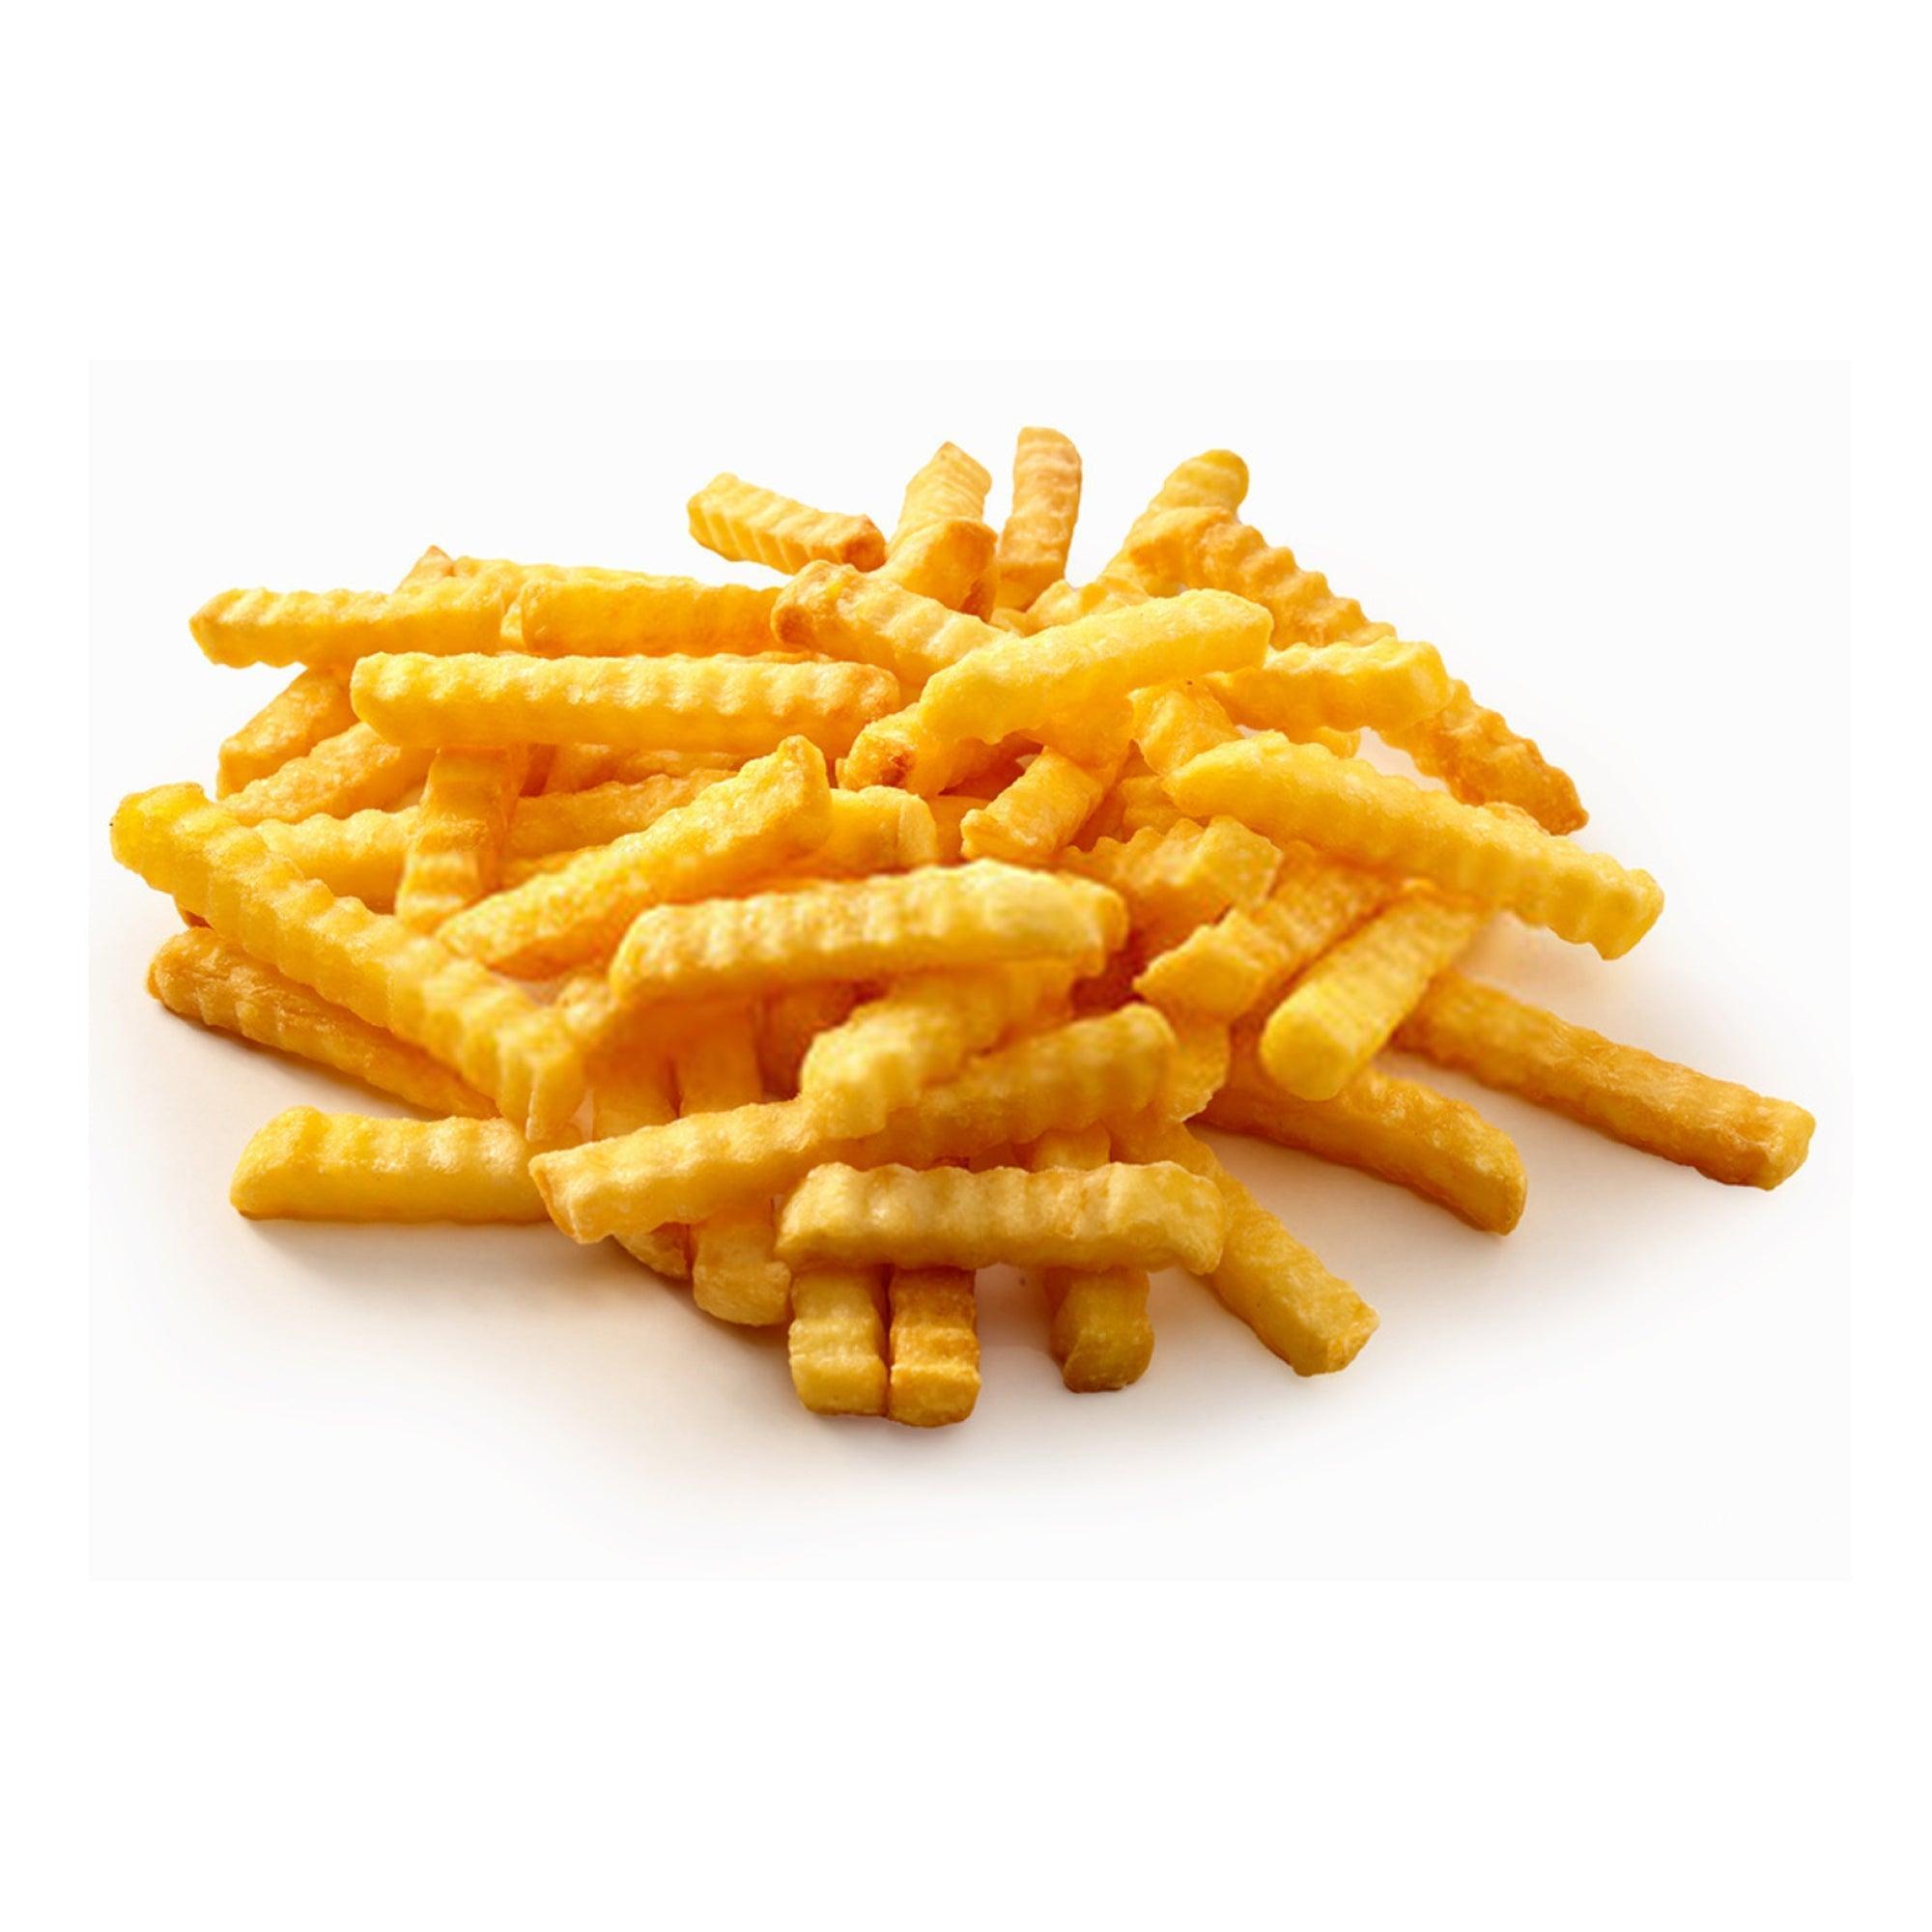 Buy Now, Crinkle Cut Fries